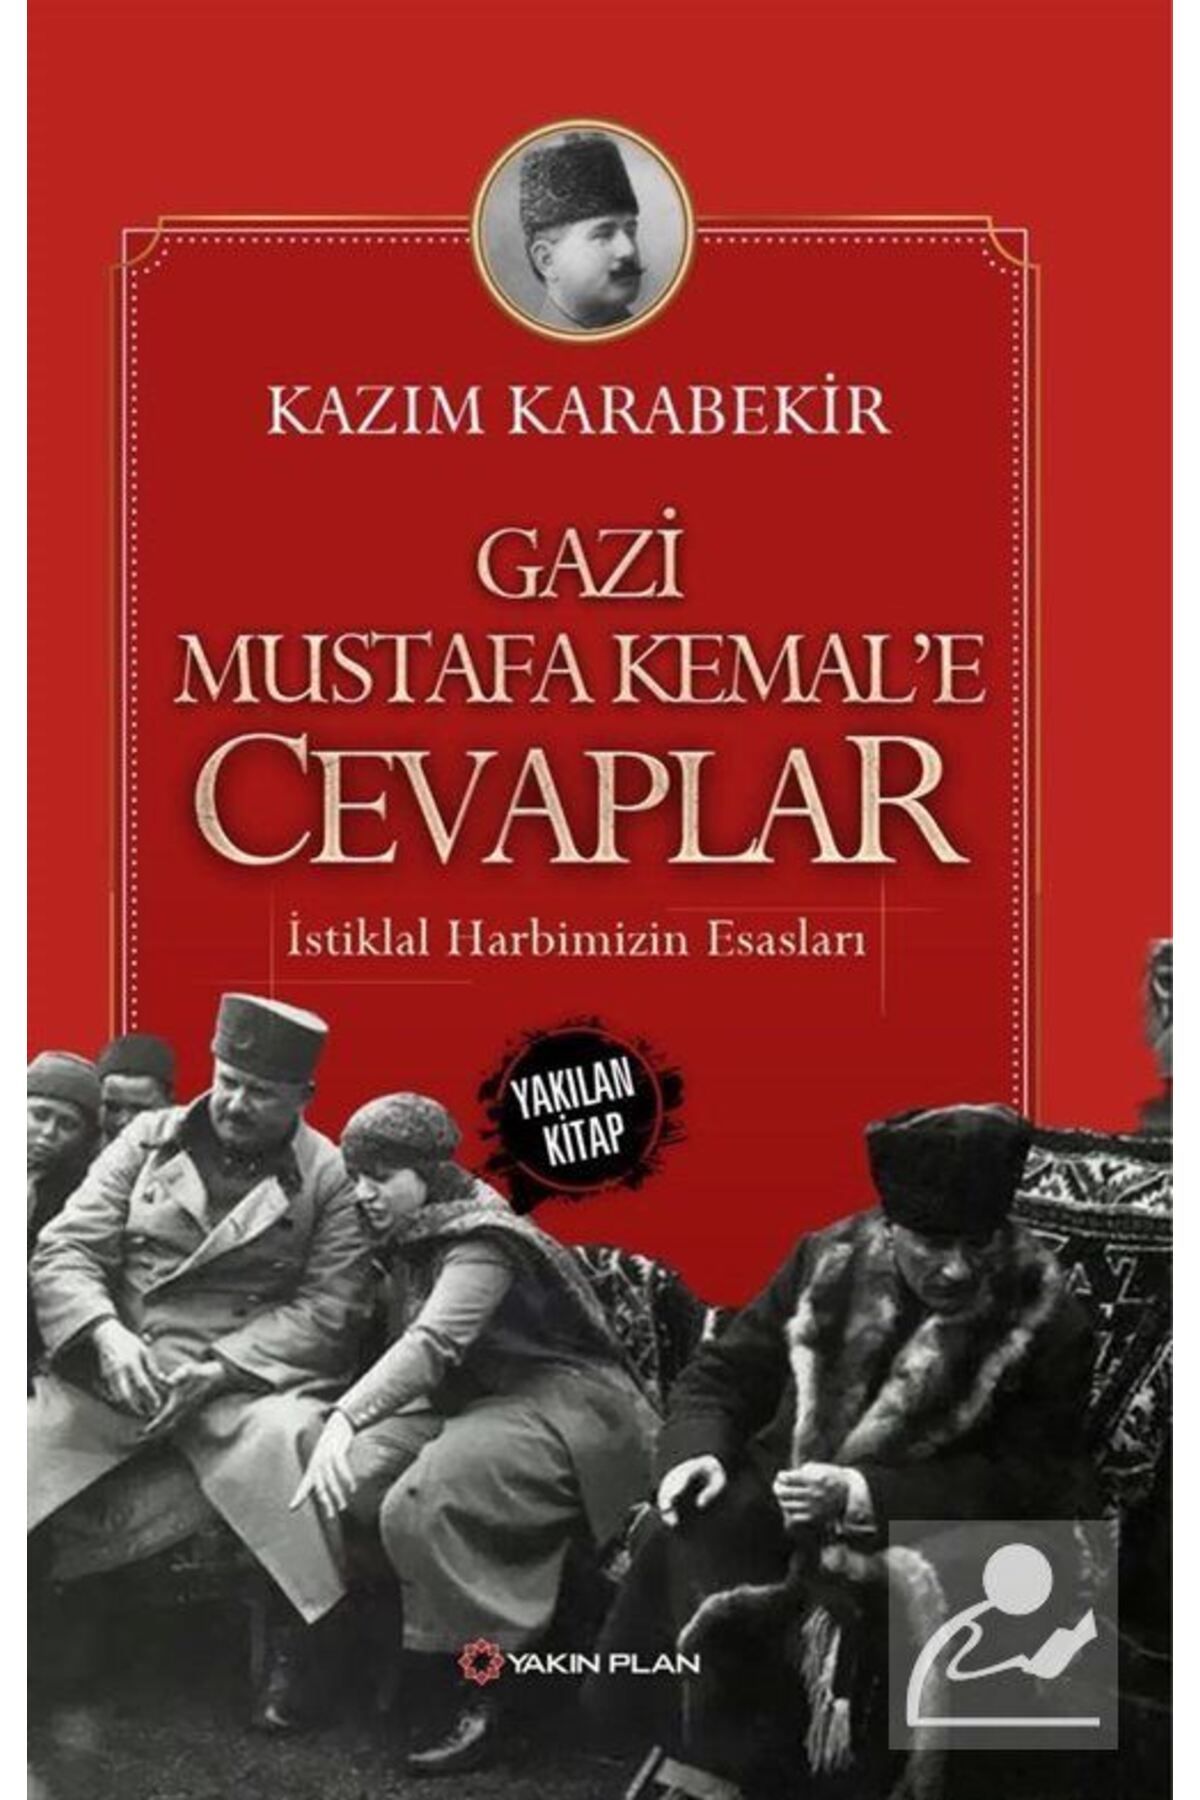 Yakın Plan Yayınları Gazi Mustafa Kemal'e Cevaplar & Istiklal Harbimizin Esasları